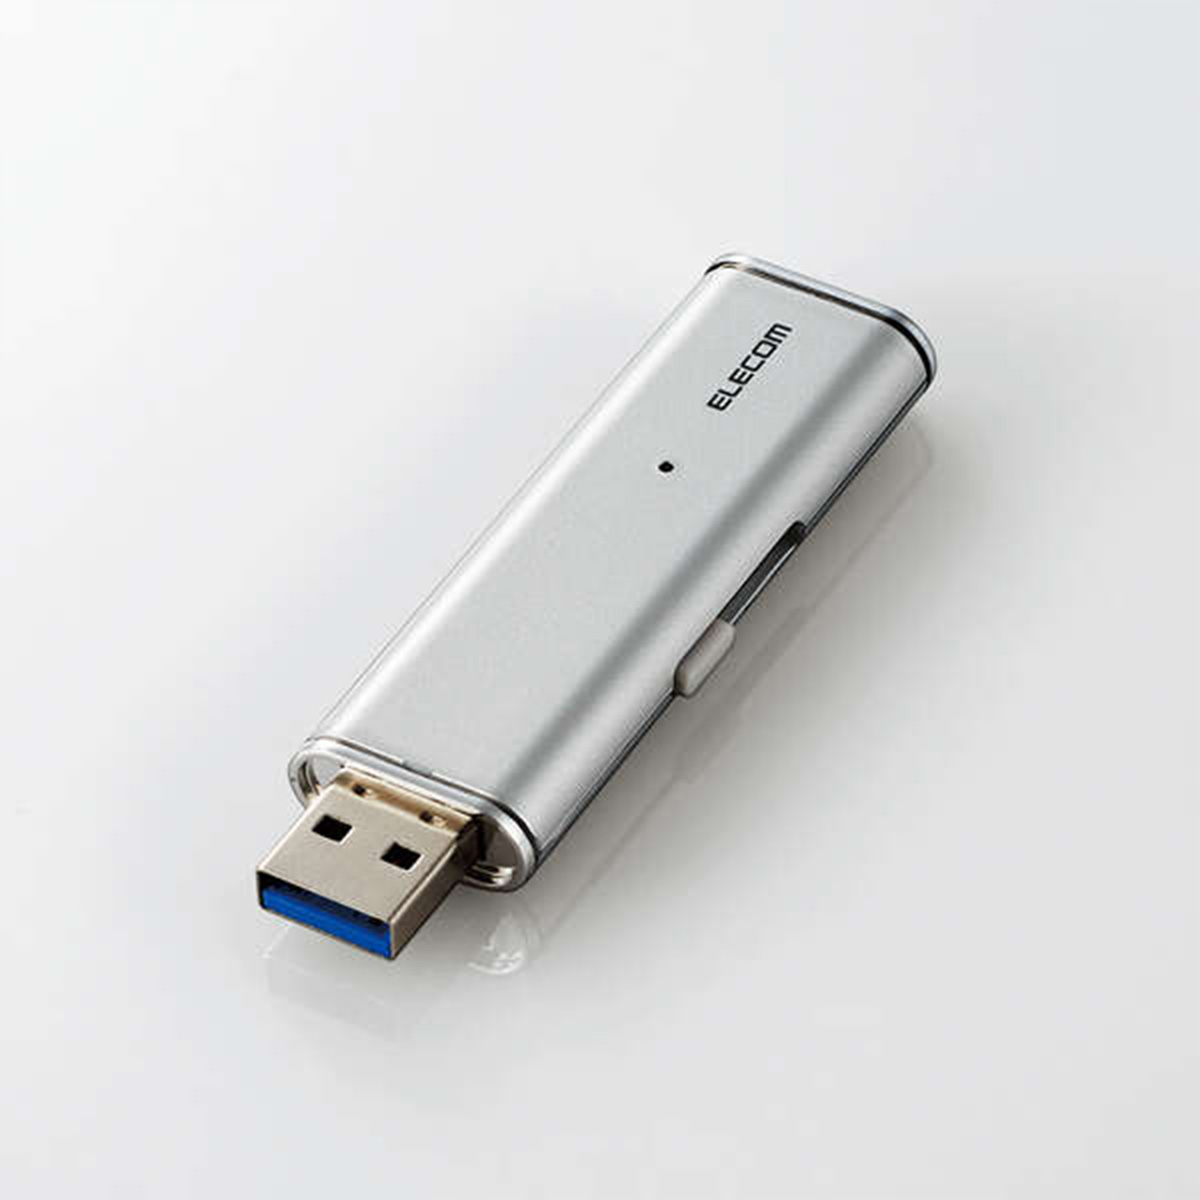 外付けSSD/ポータブル/USB3.2(Gen1)対応/超小型/500GB/シルバー/データ復旧サービスLite付